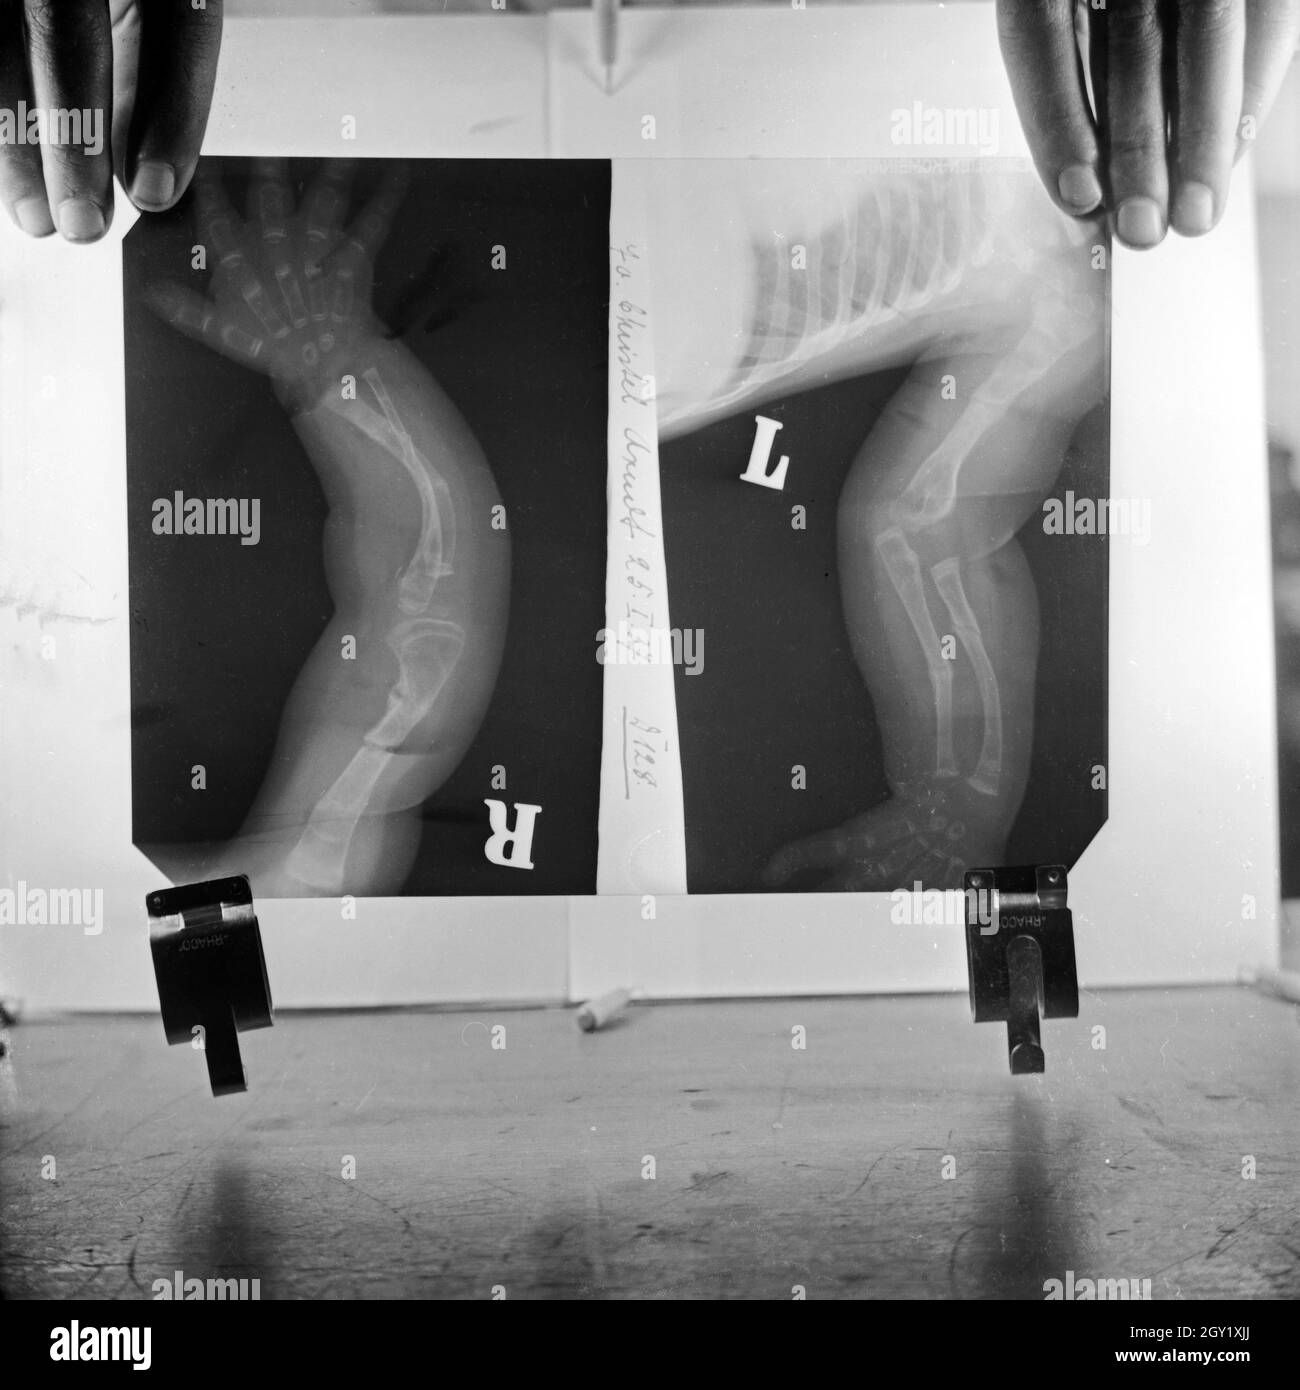 Reproduktion von Röntgenbildern der deformierten Knochen eines Kleinkinds, Deutschland 1930er Jahre. Die Vervielfältigung von Röntgenaufnahmen von verformten Arm- und Beinknochen eines Kindes, Deutschland 1930. Stockfoto